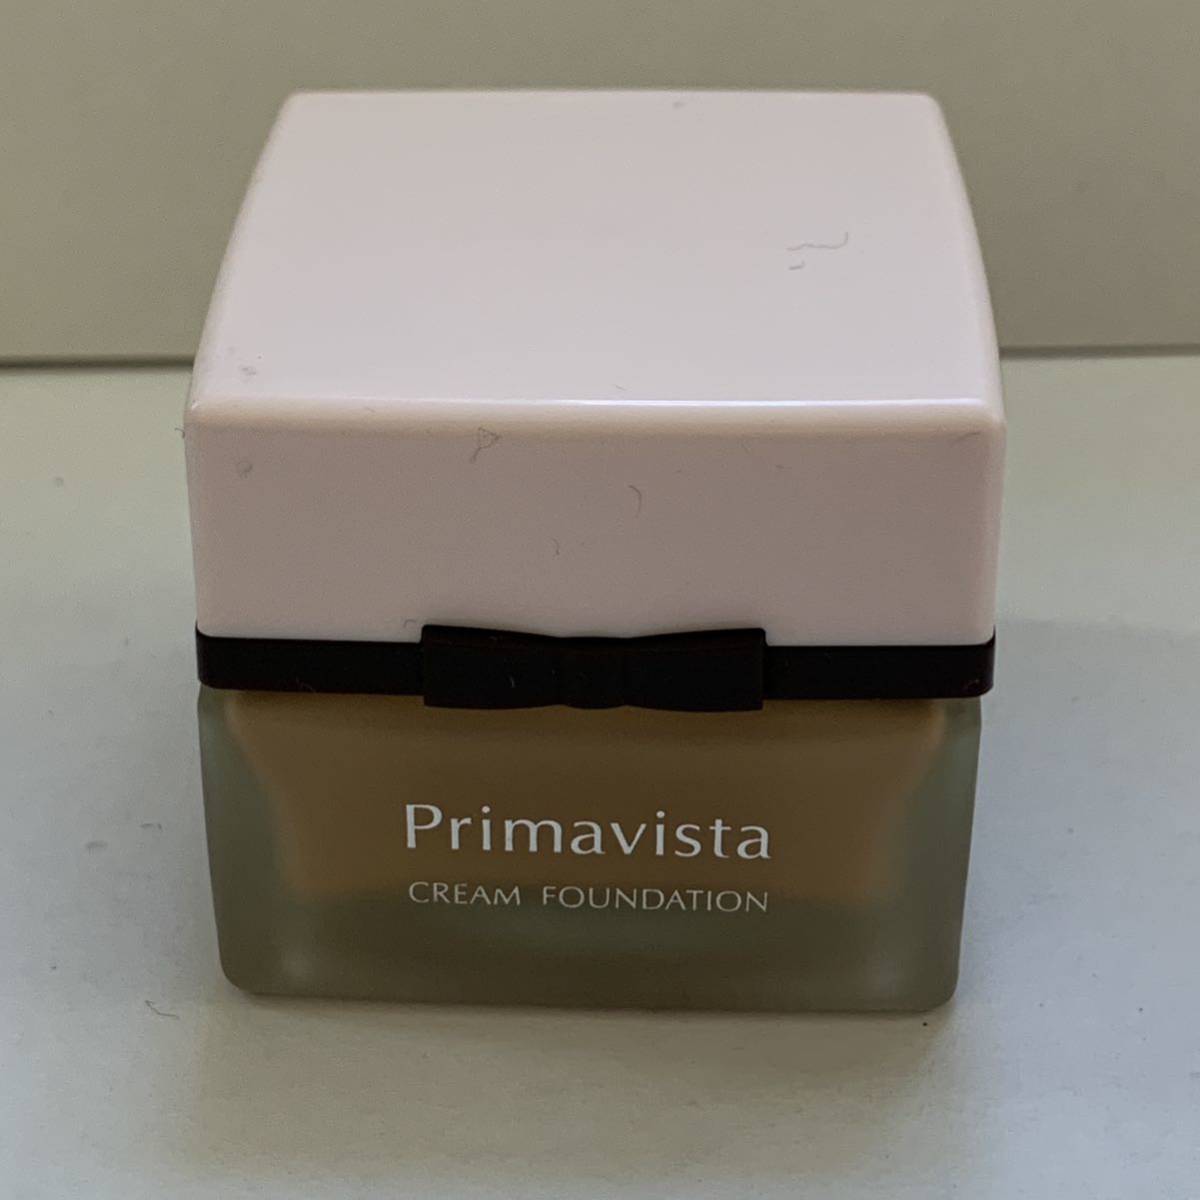  Premavista cream foundation beige oak ru03